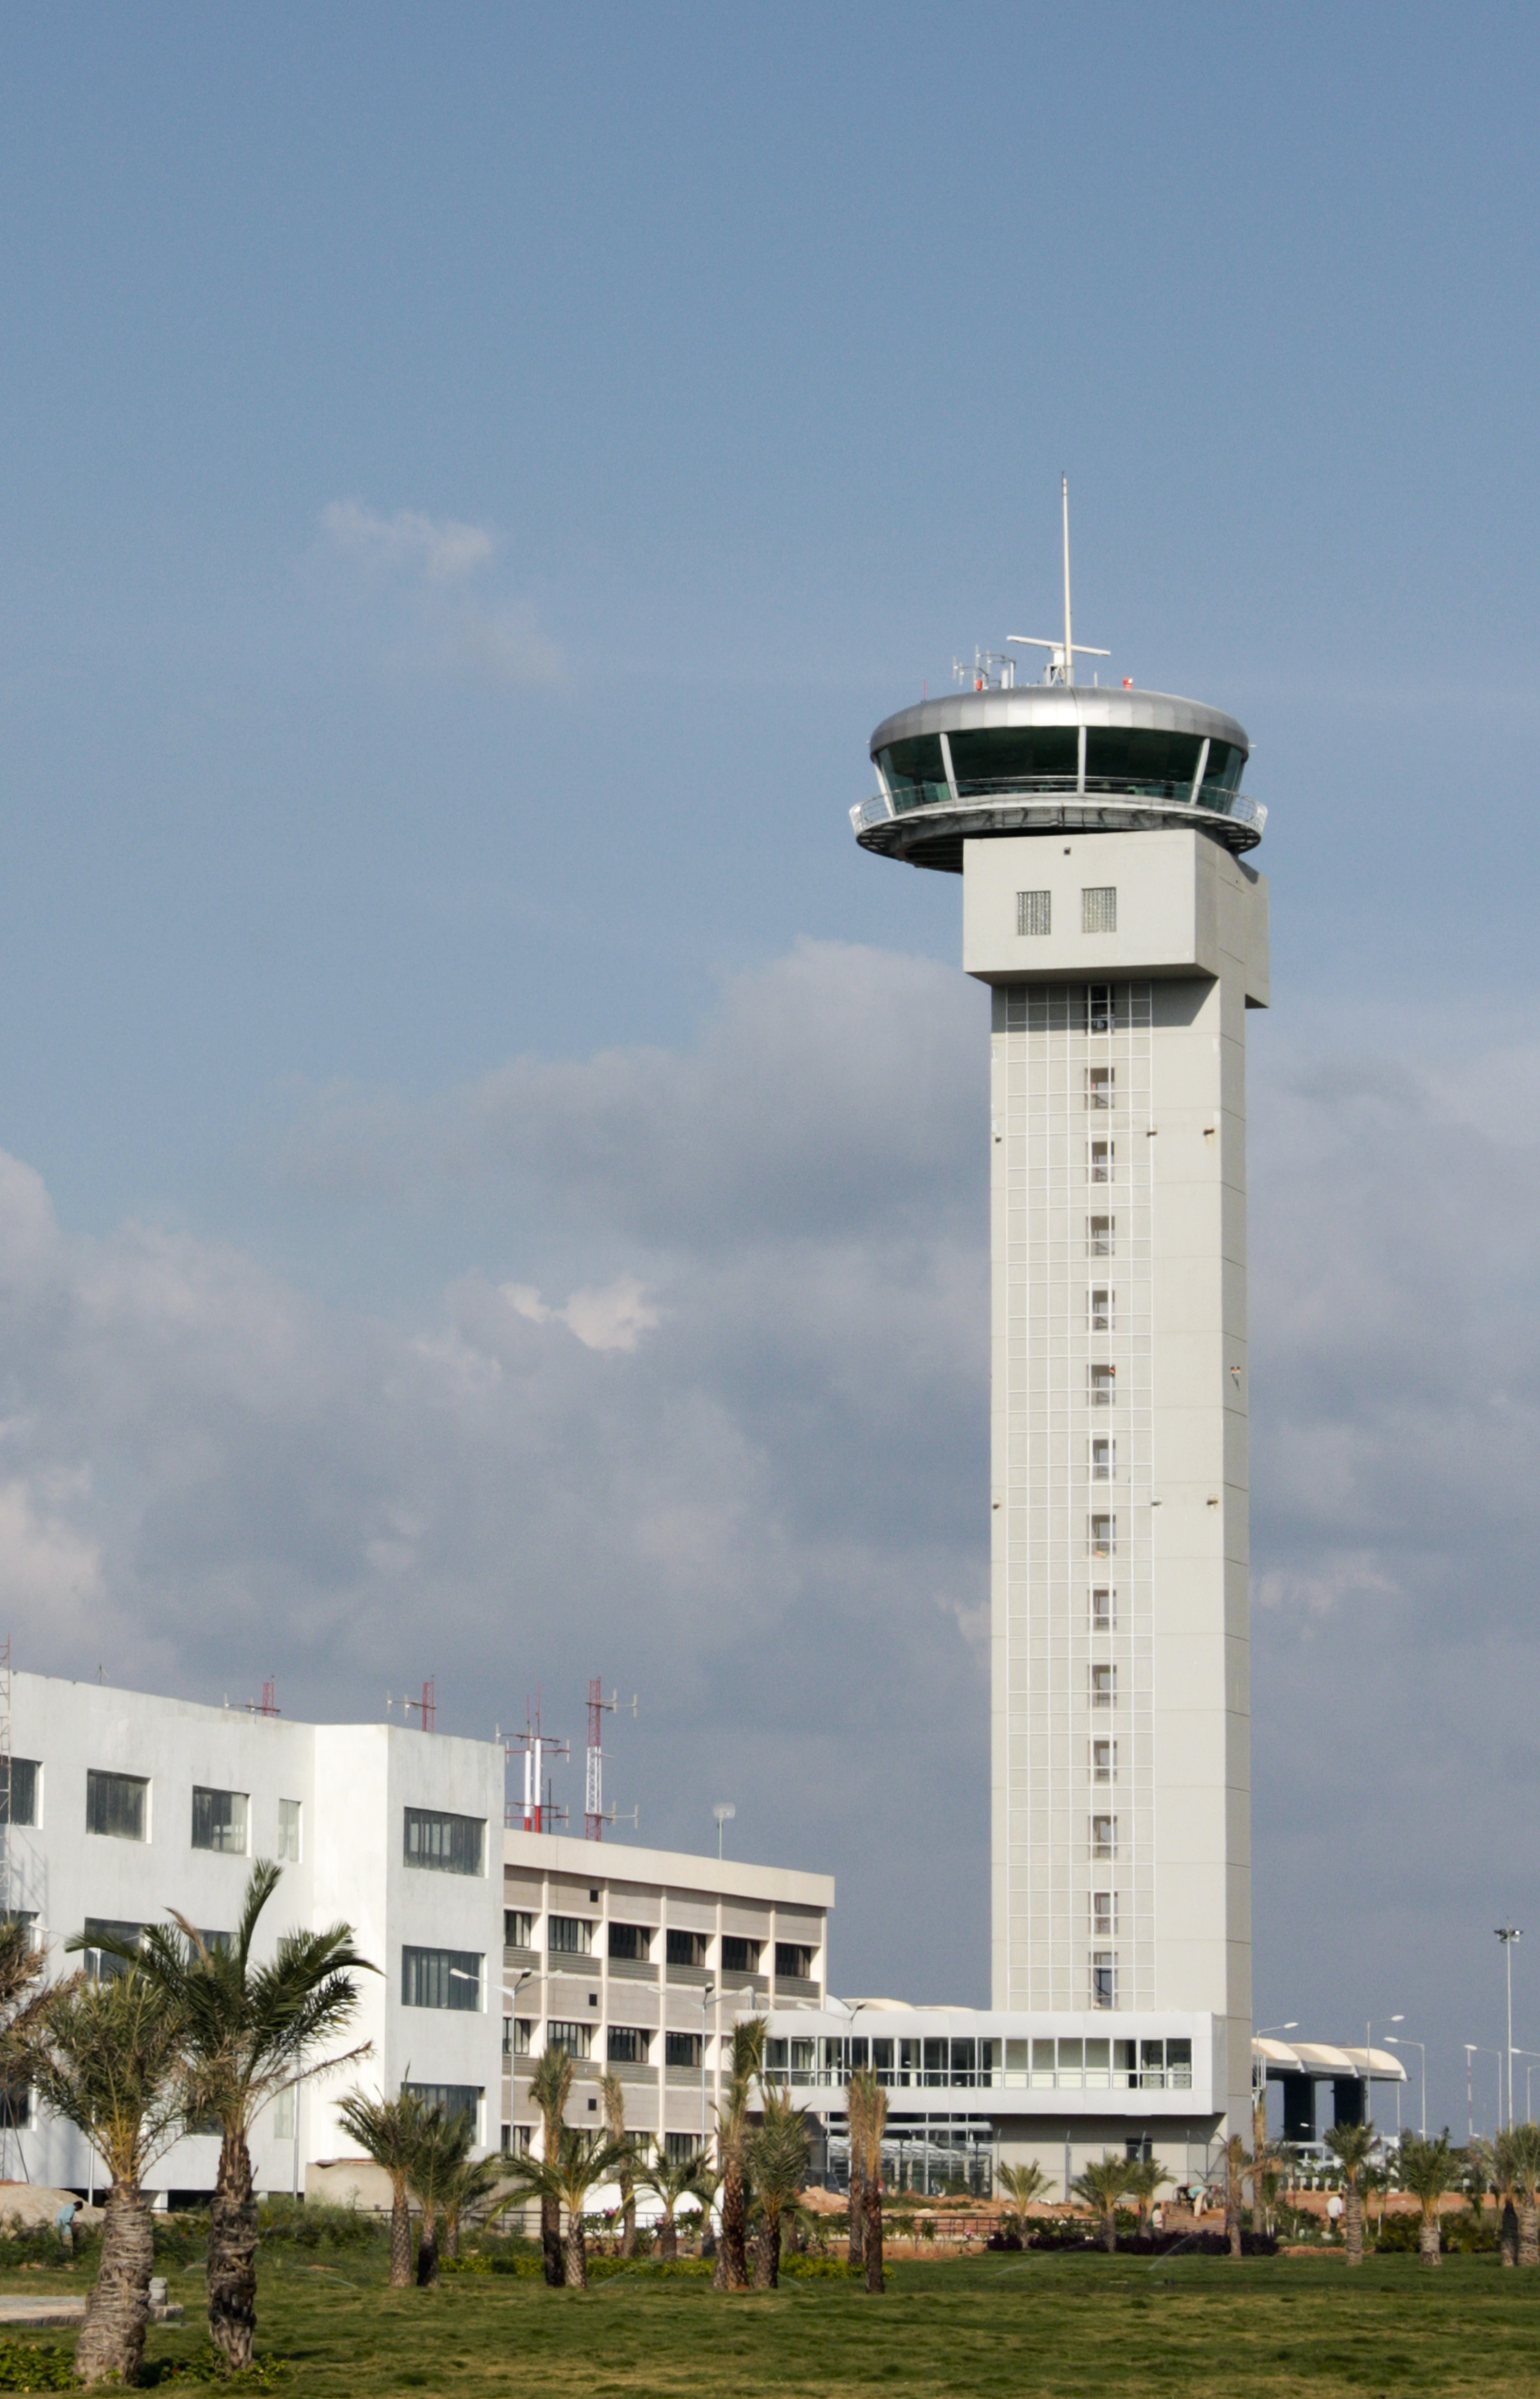 Air traffic control tower photo